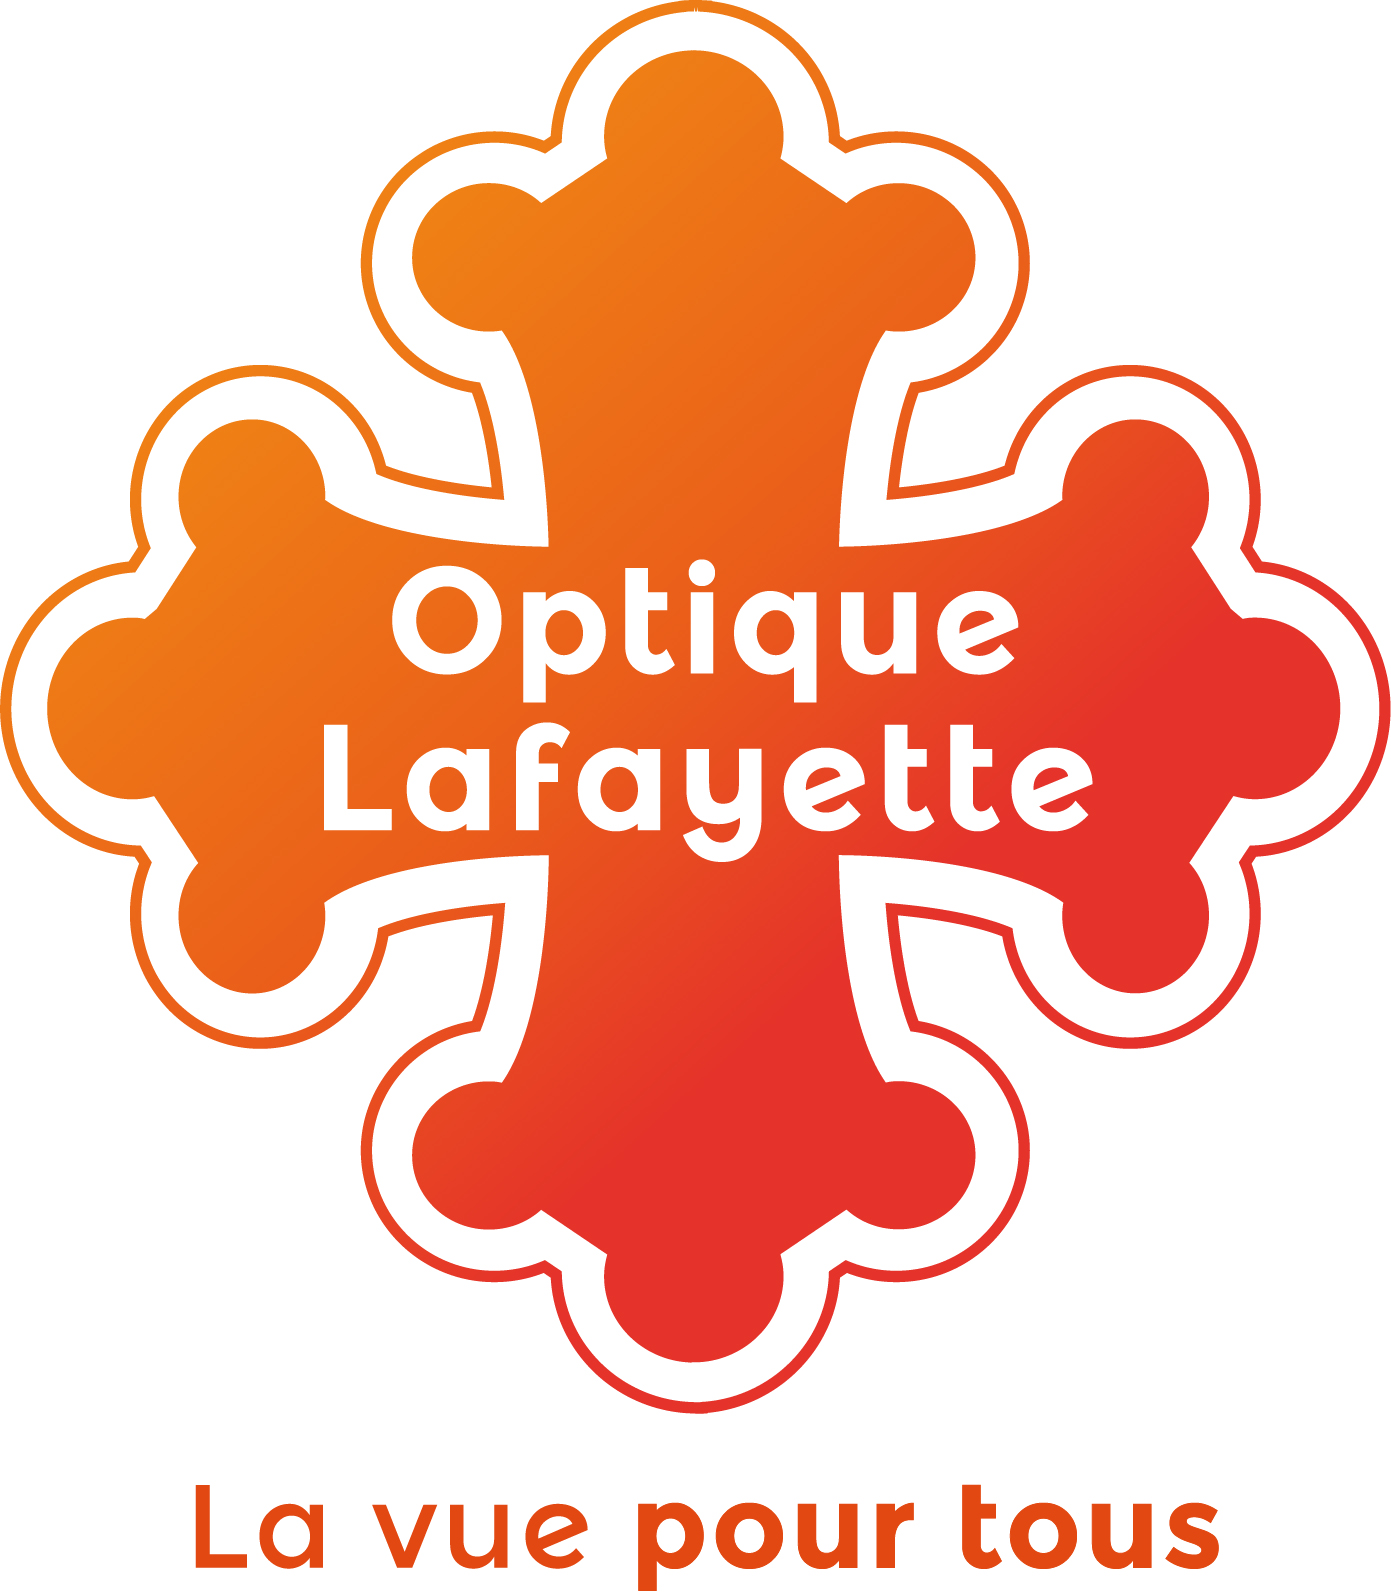 Optique Lafayette Belfort